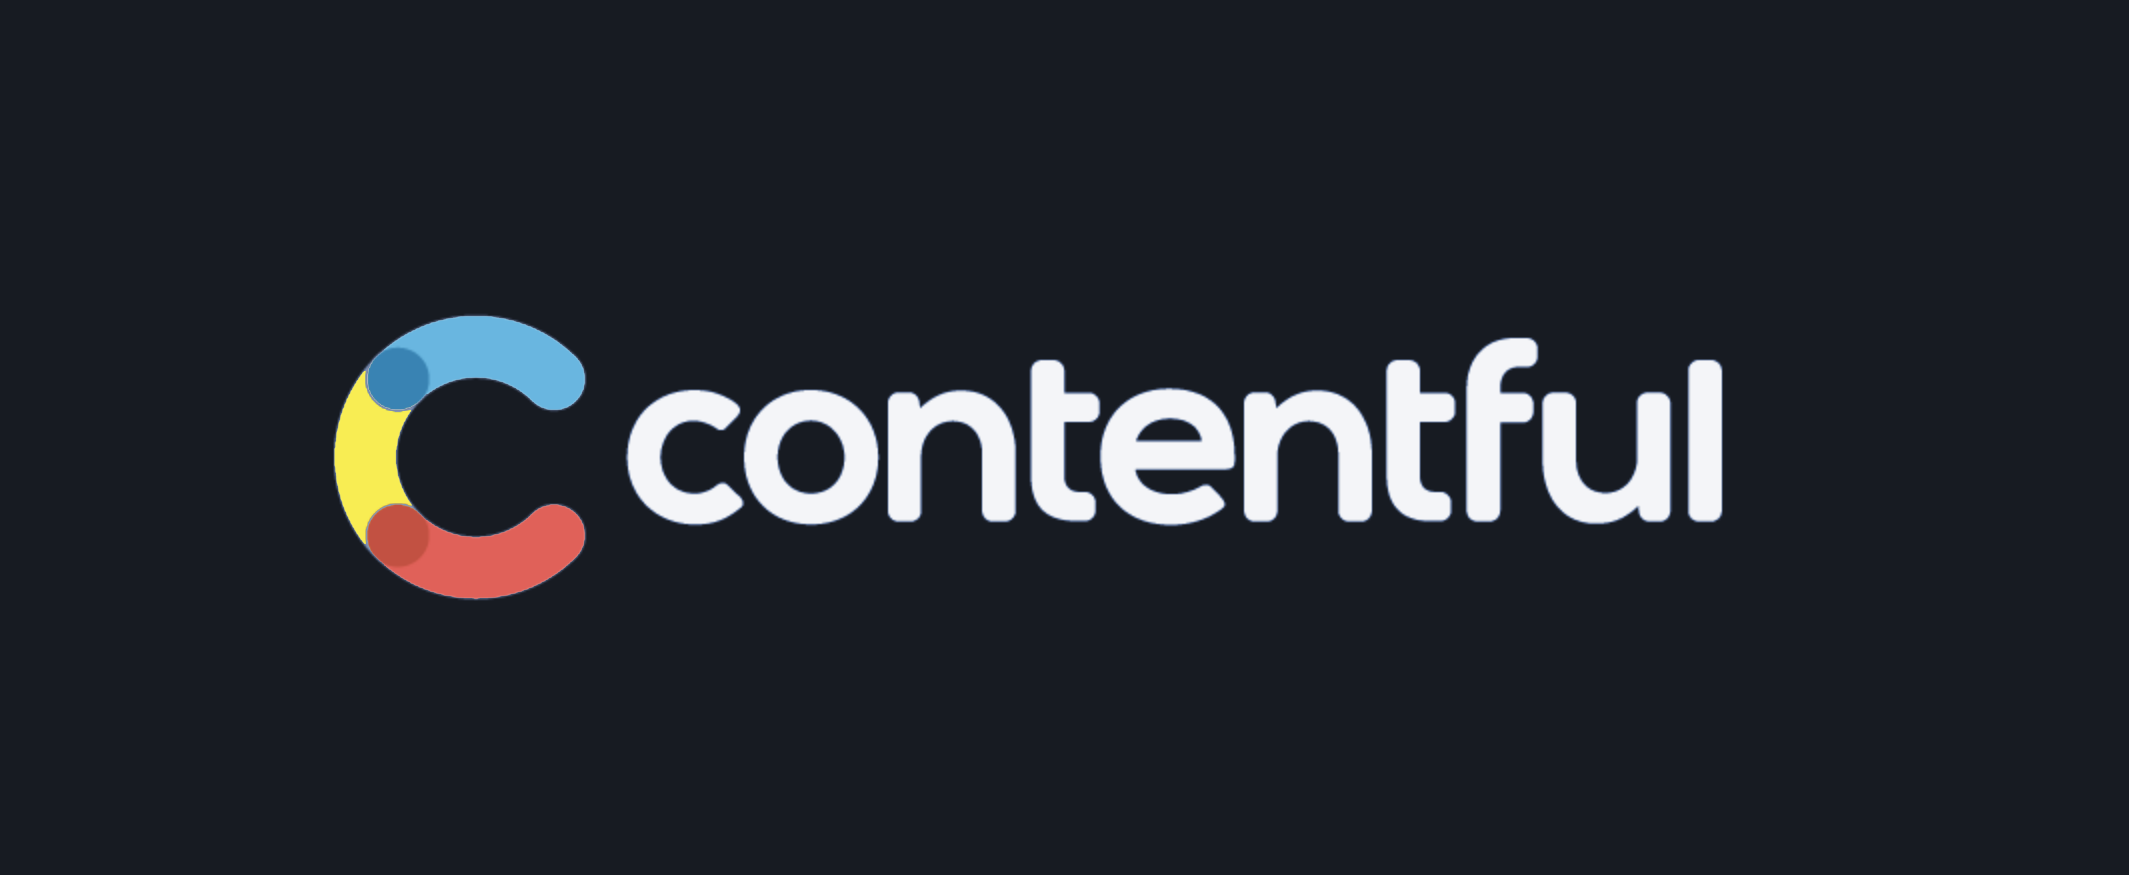 Contentful logo - dark